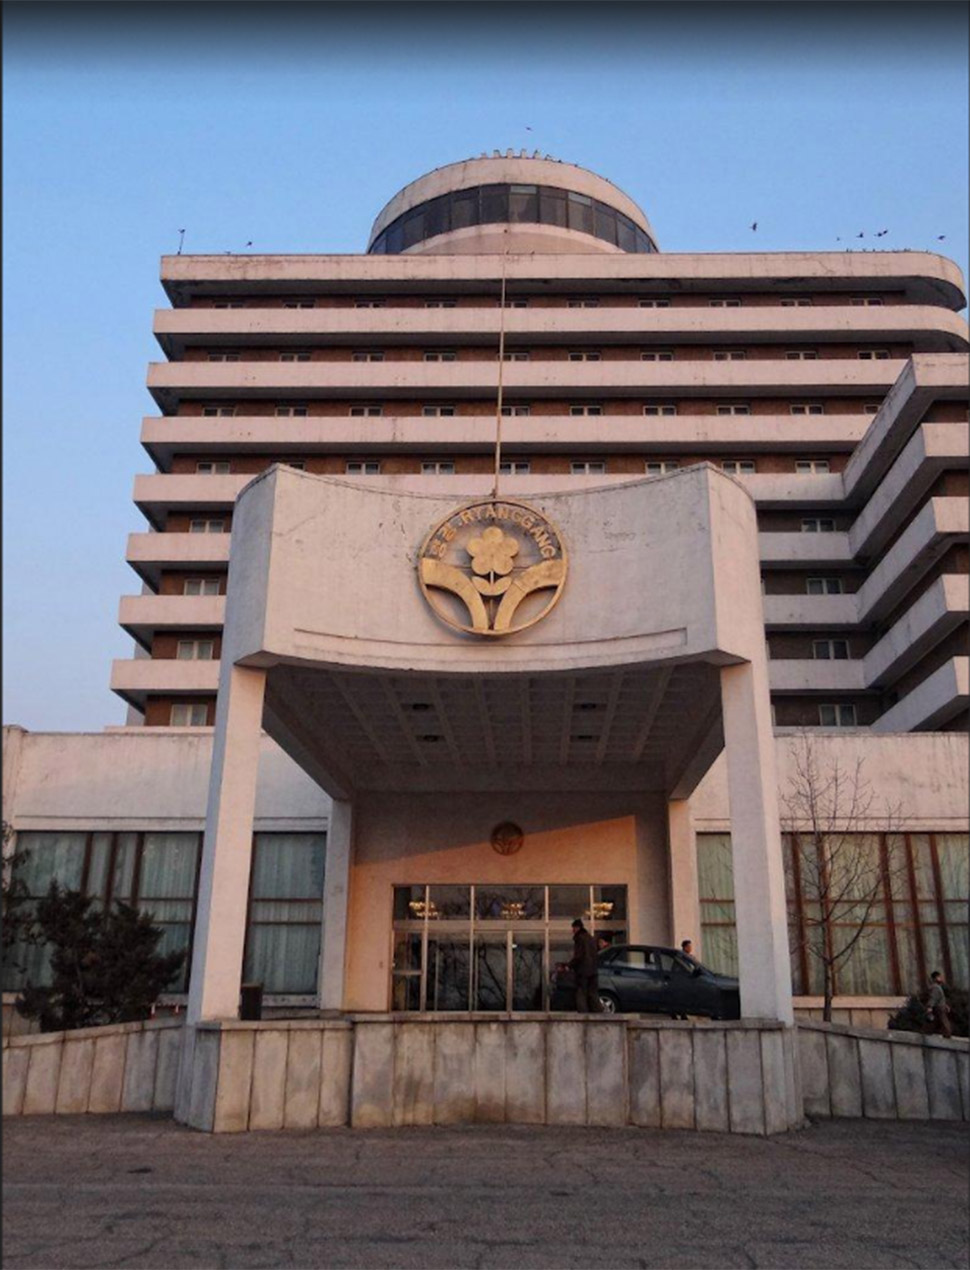 Туристы называют этот северокорейский отель тюрьмой, несмотря на его шестизвездочный рейтинг